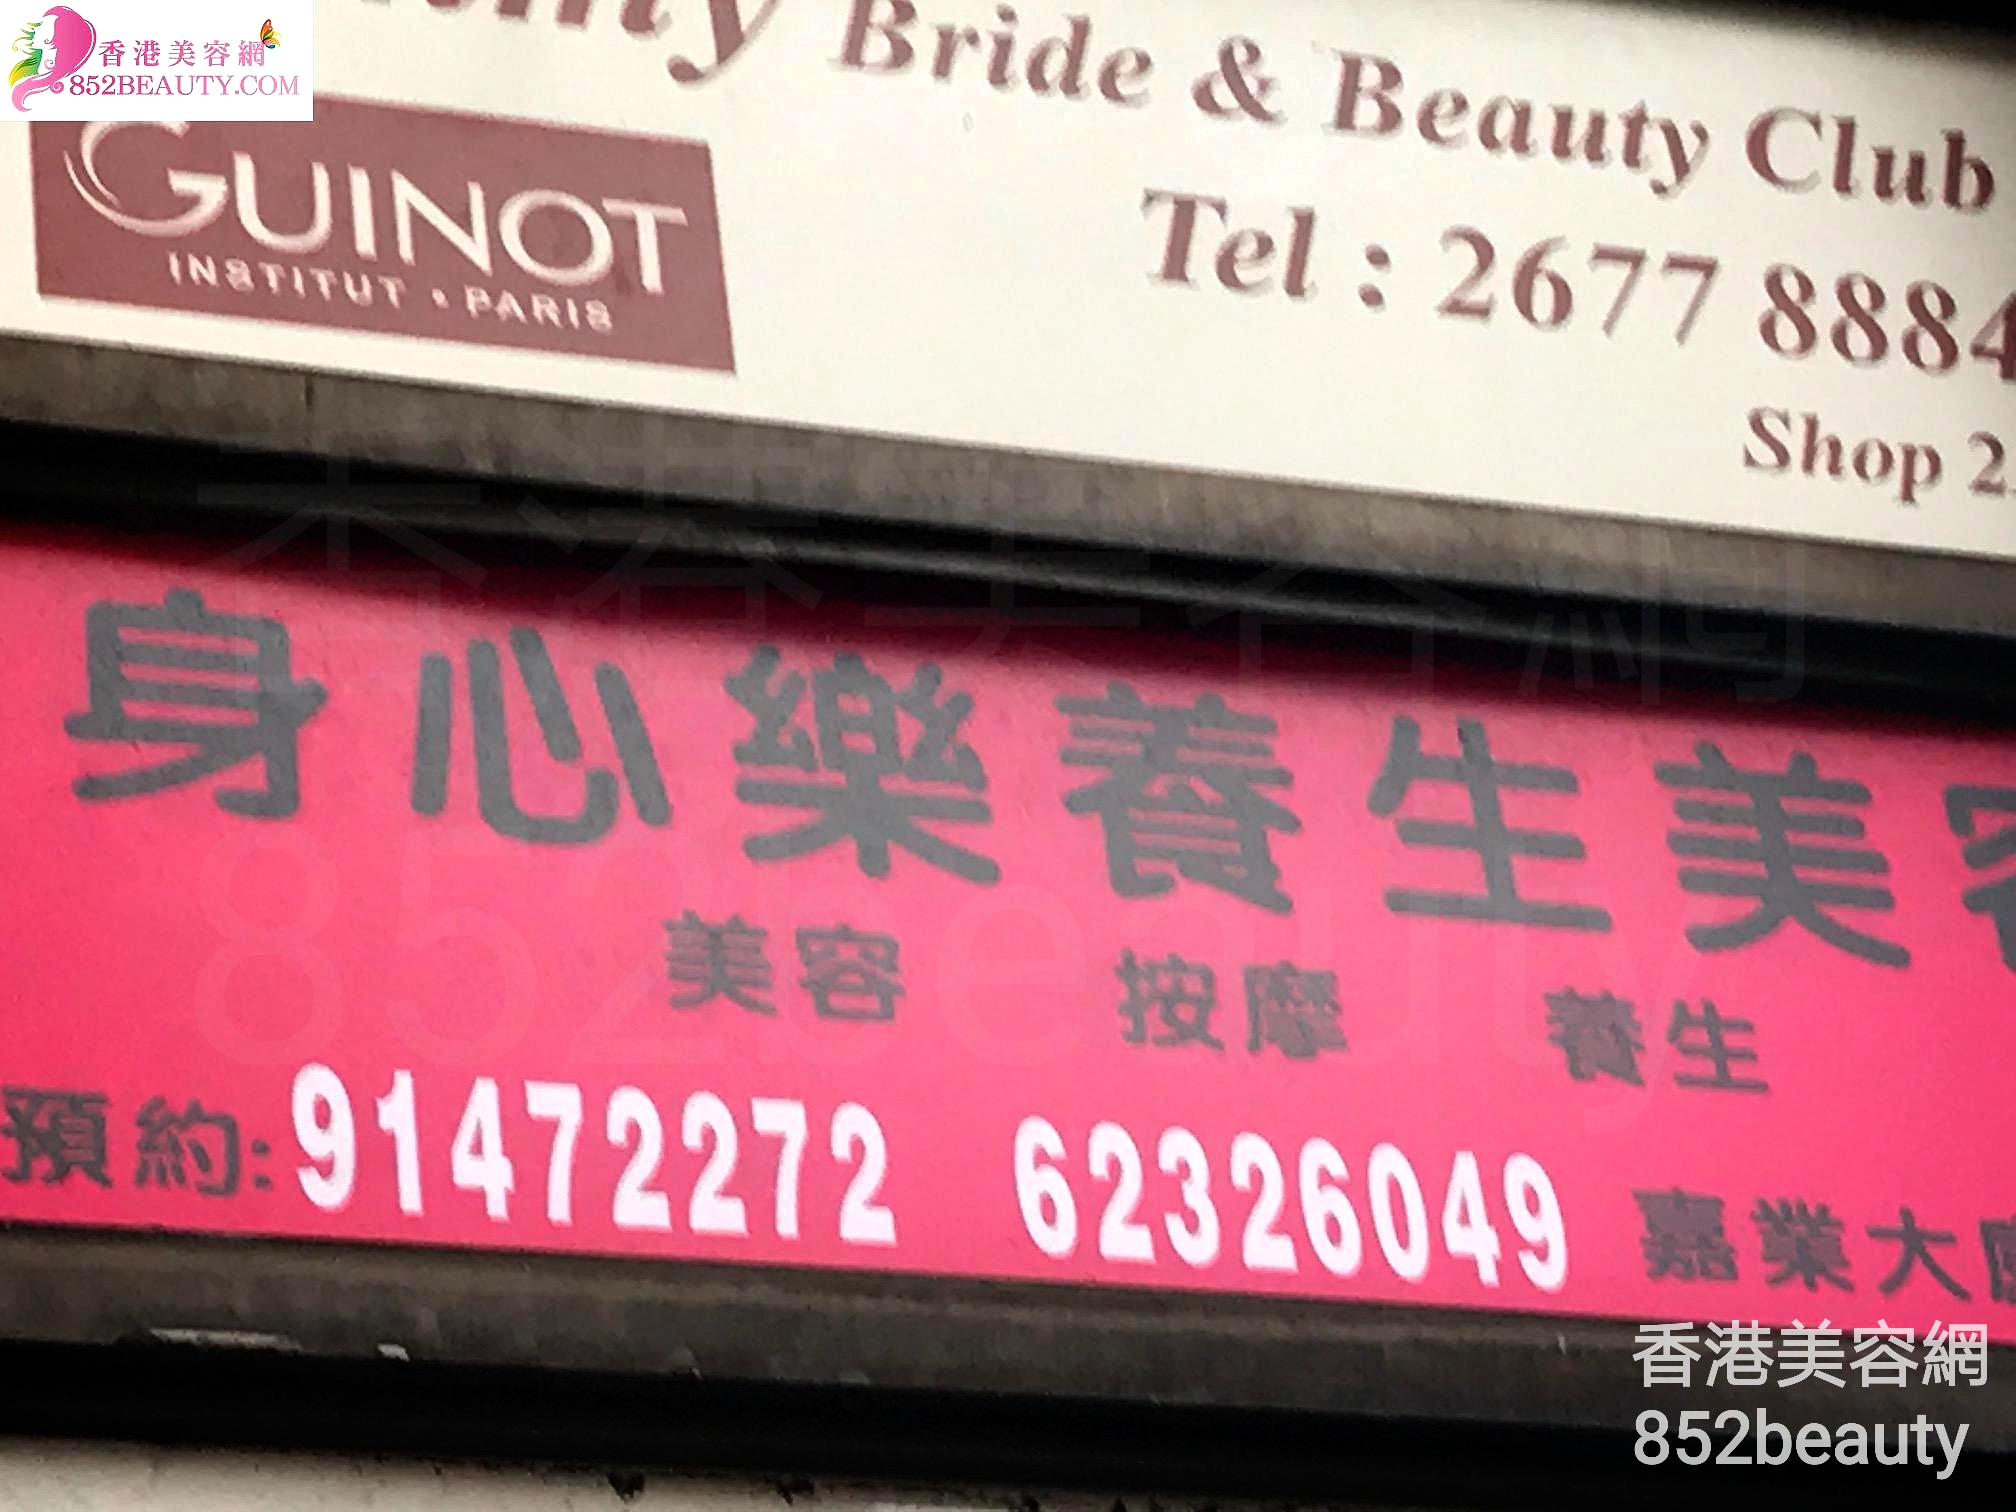 香港美容網 Hong Kong Beauty Salon 美容院 / 美容師: 身心樂養生美容